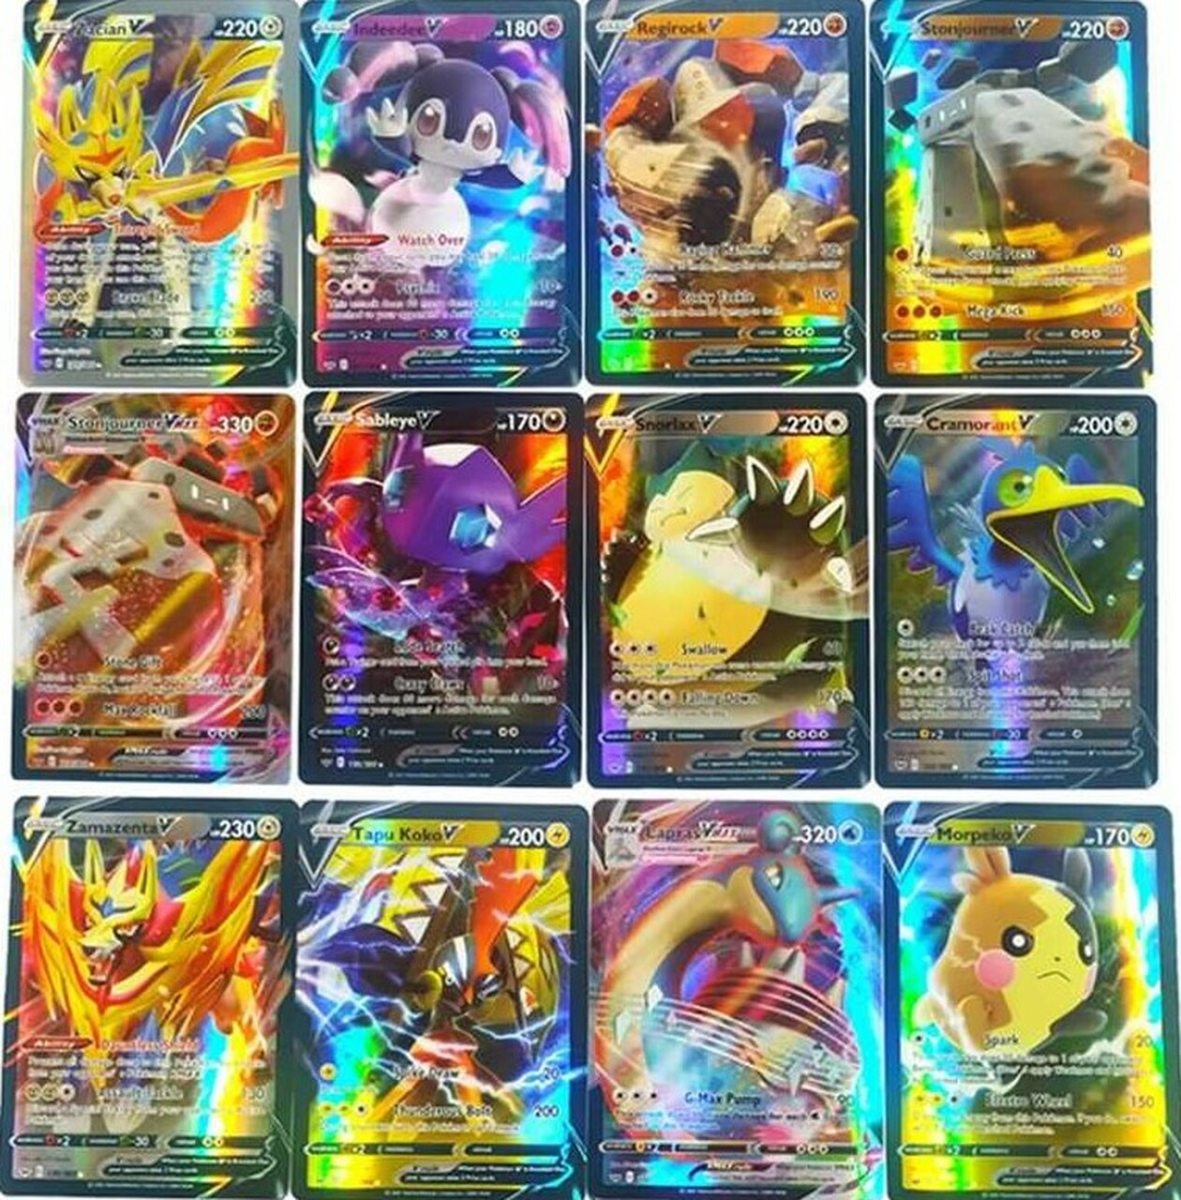 Pokémon V trading cards